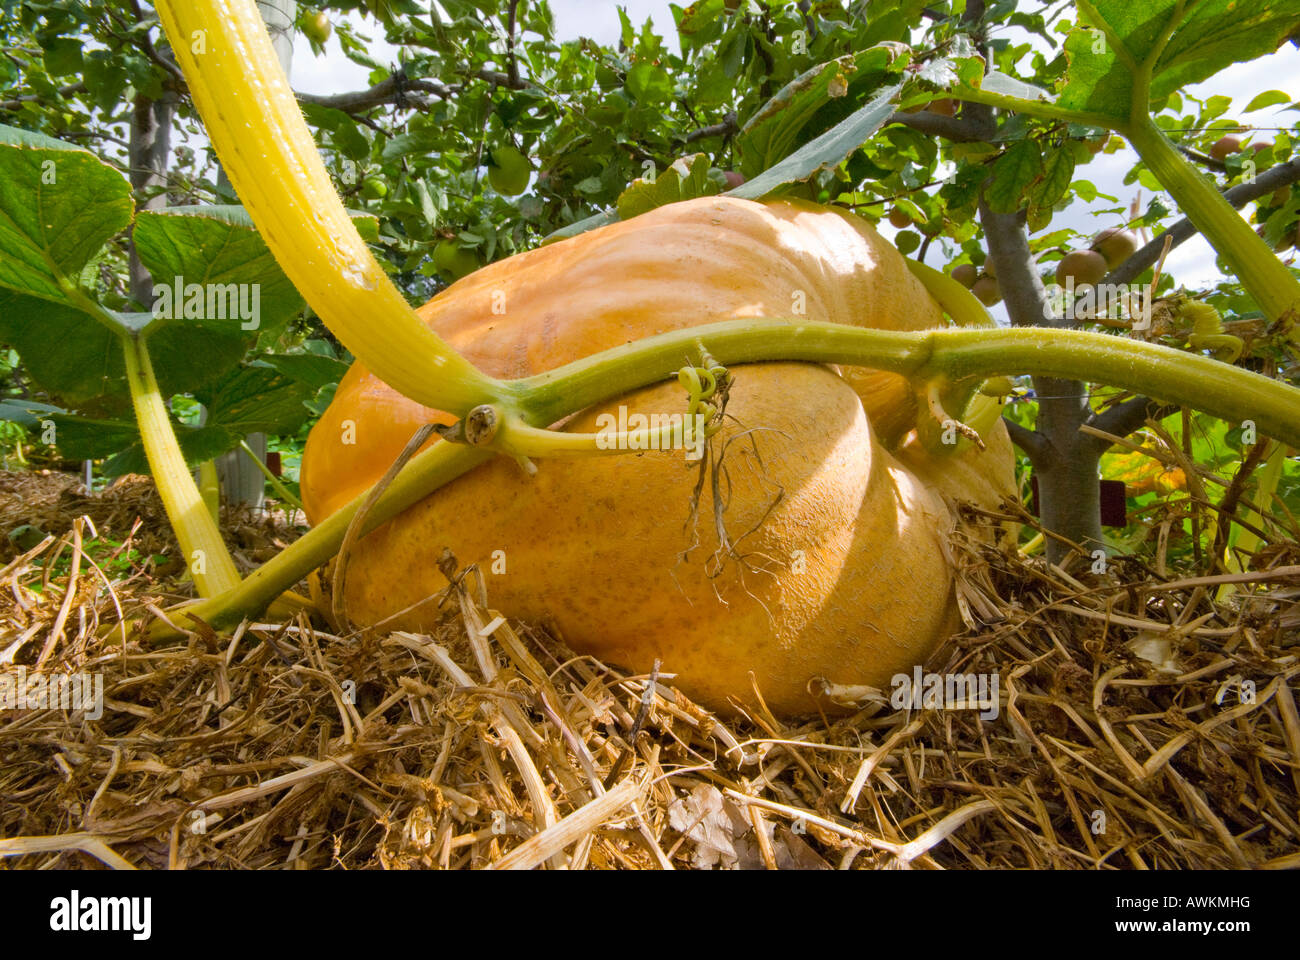 Giant pumpkin cucurbita maxima Stock Photo